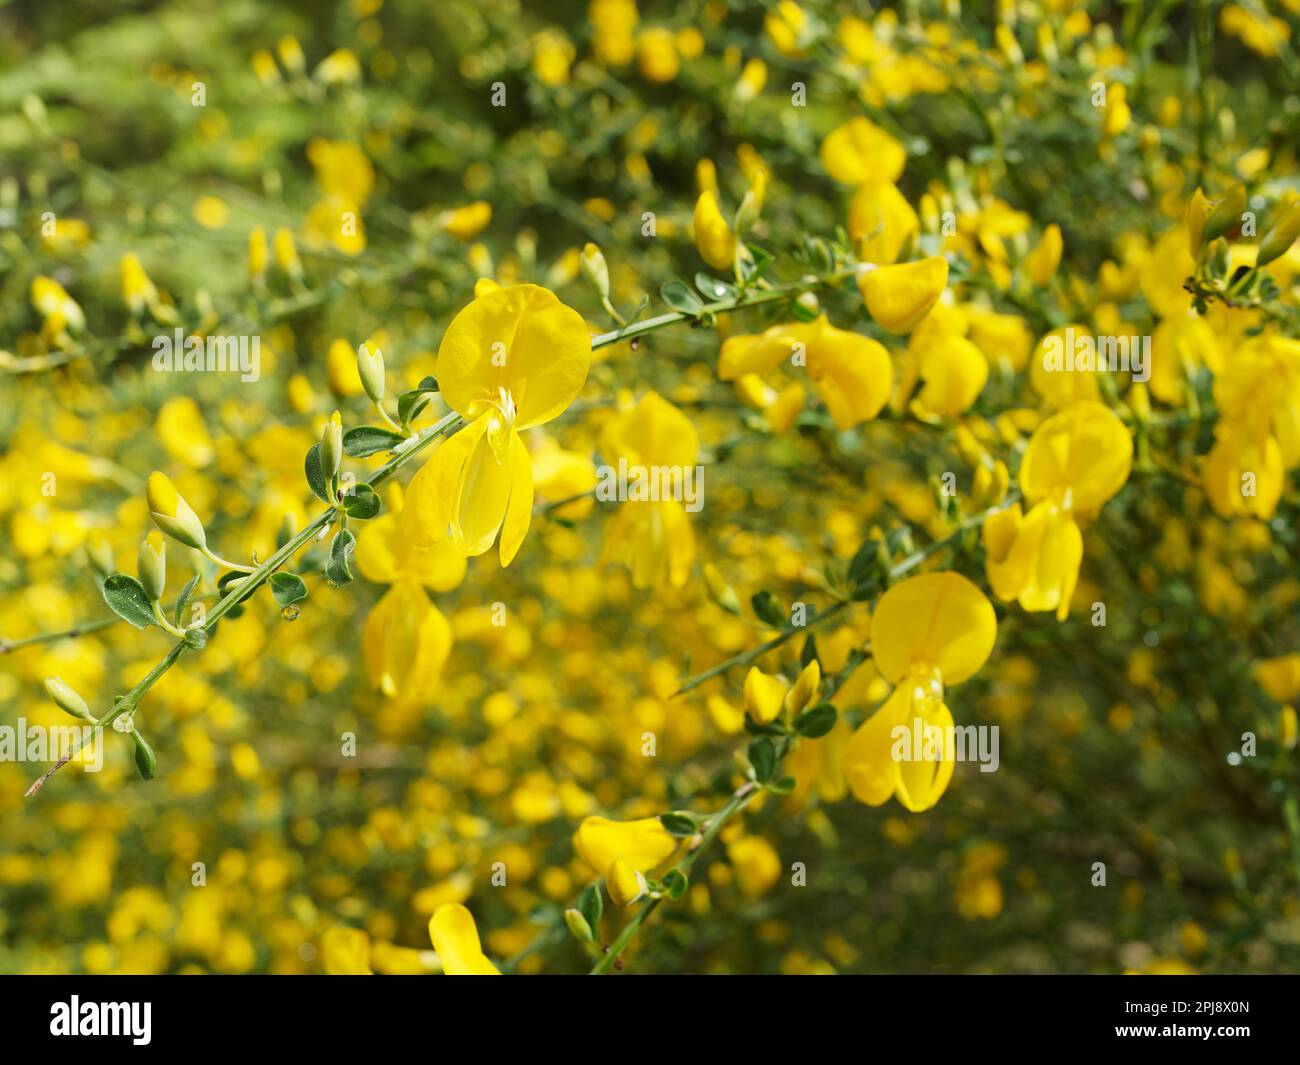 Detalle del arbusto de una escoba común en flor Foto de stock